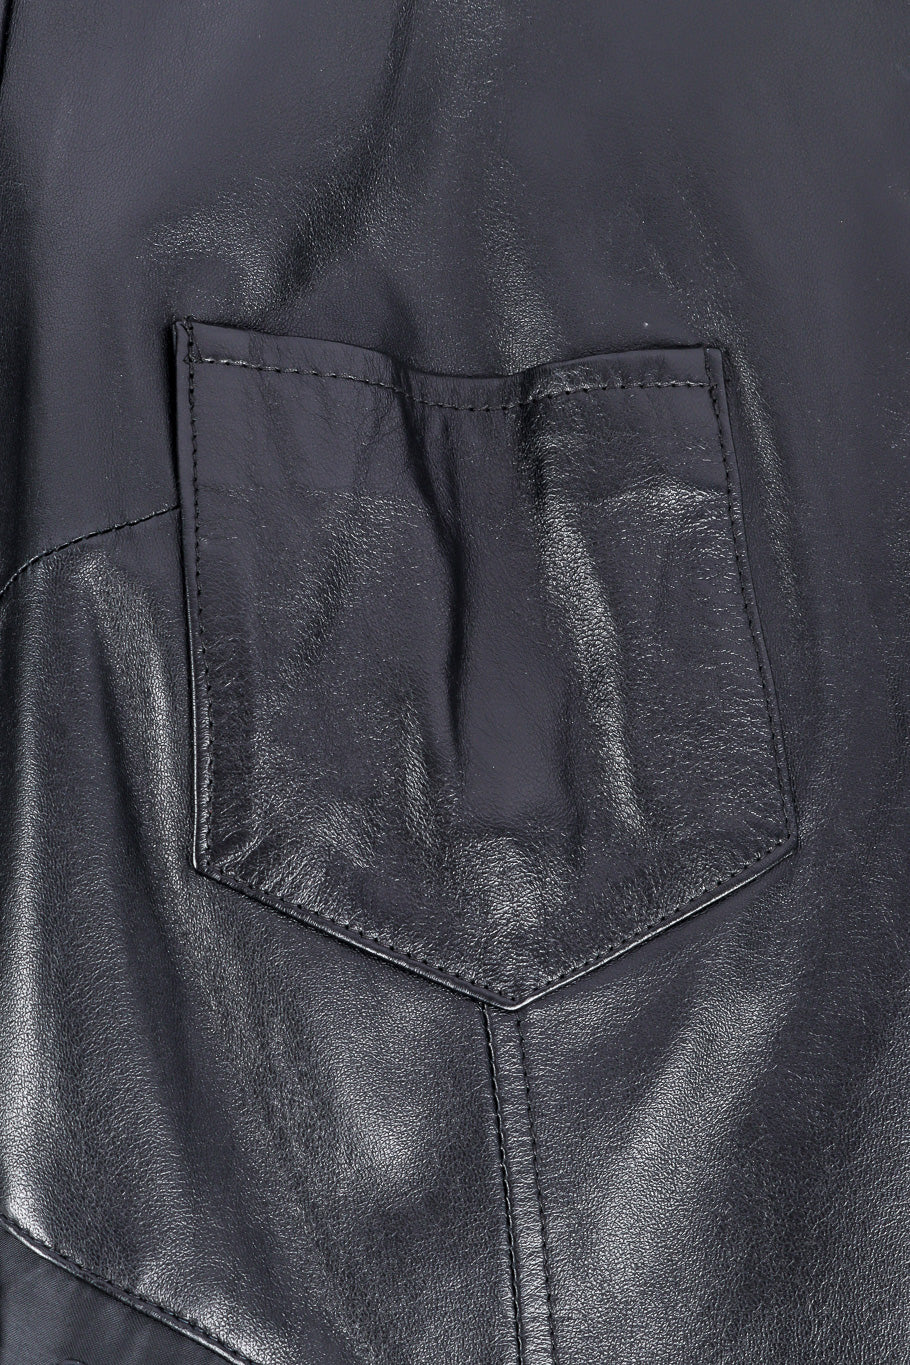 Dolce & Gabbana leather panther jacket front pocket @recessla